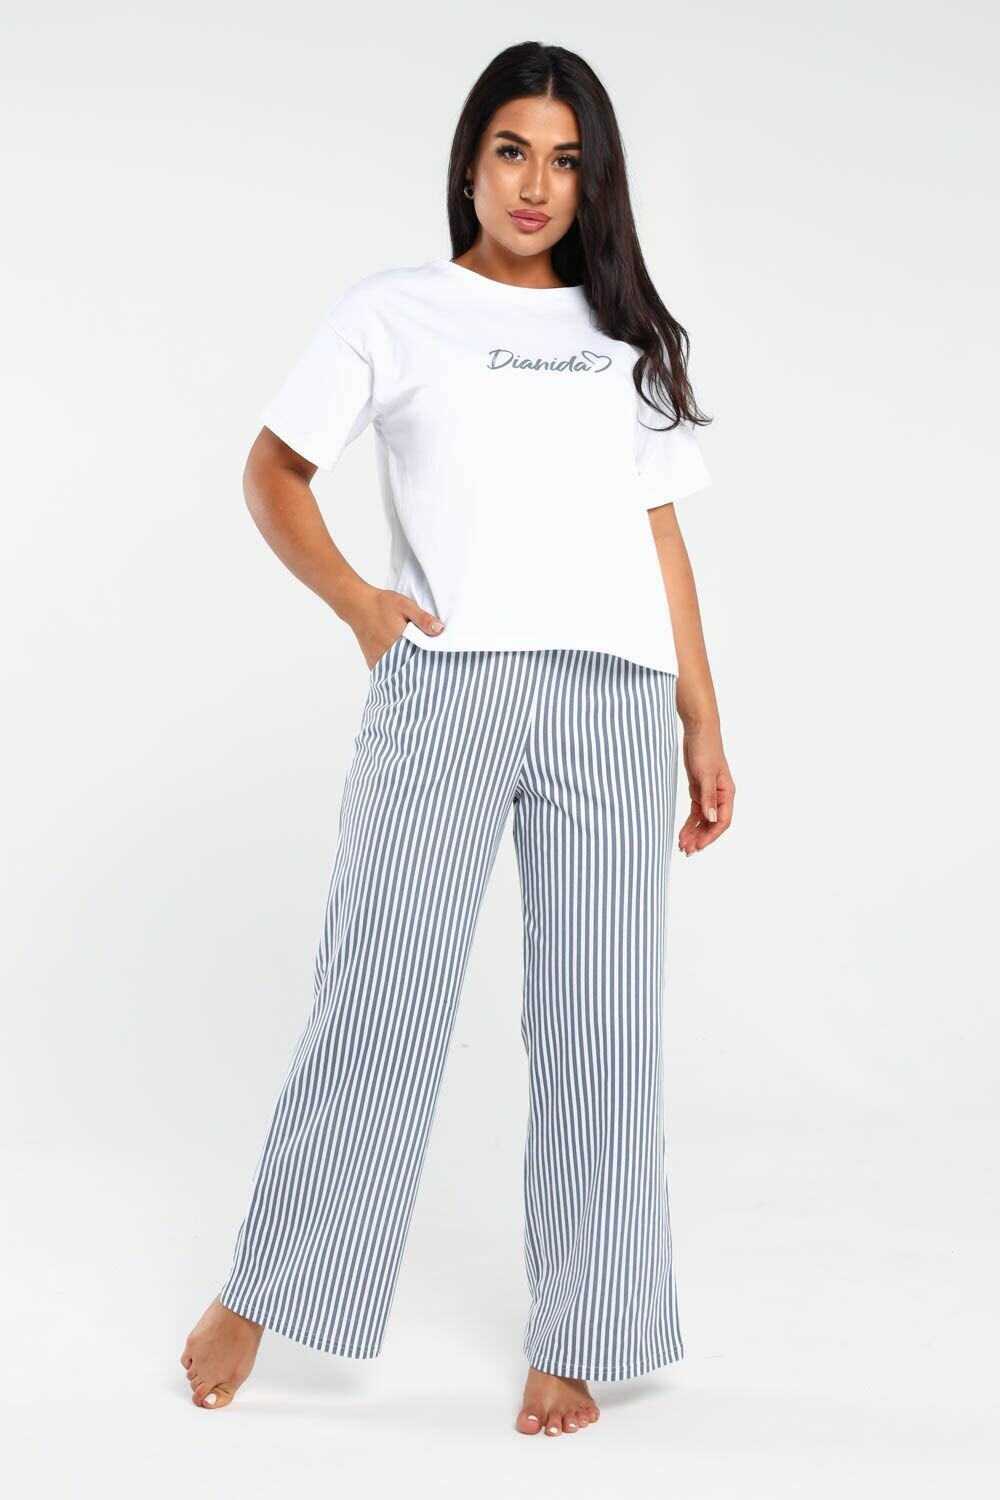 Пижама DIANIDA М-799 размеры 44-54 (54, светло-серый) - фотография № 2